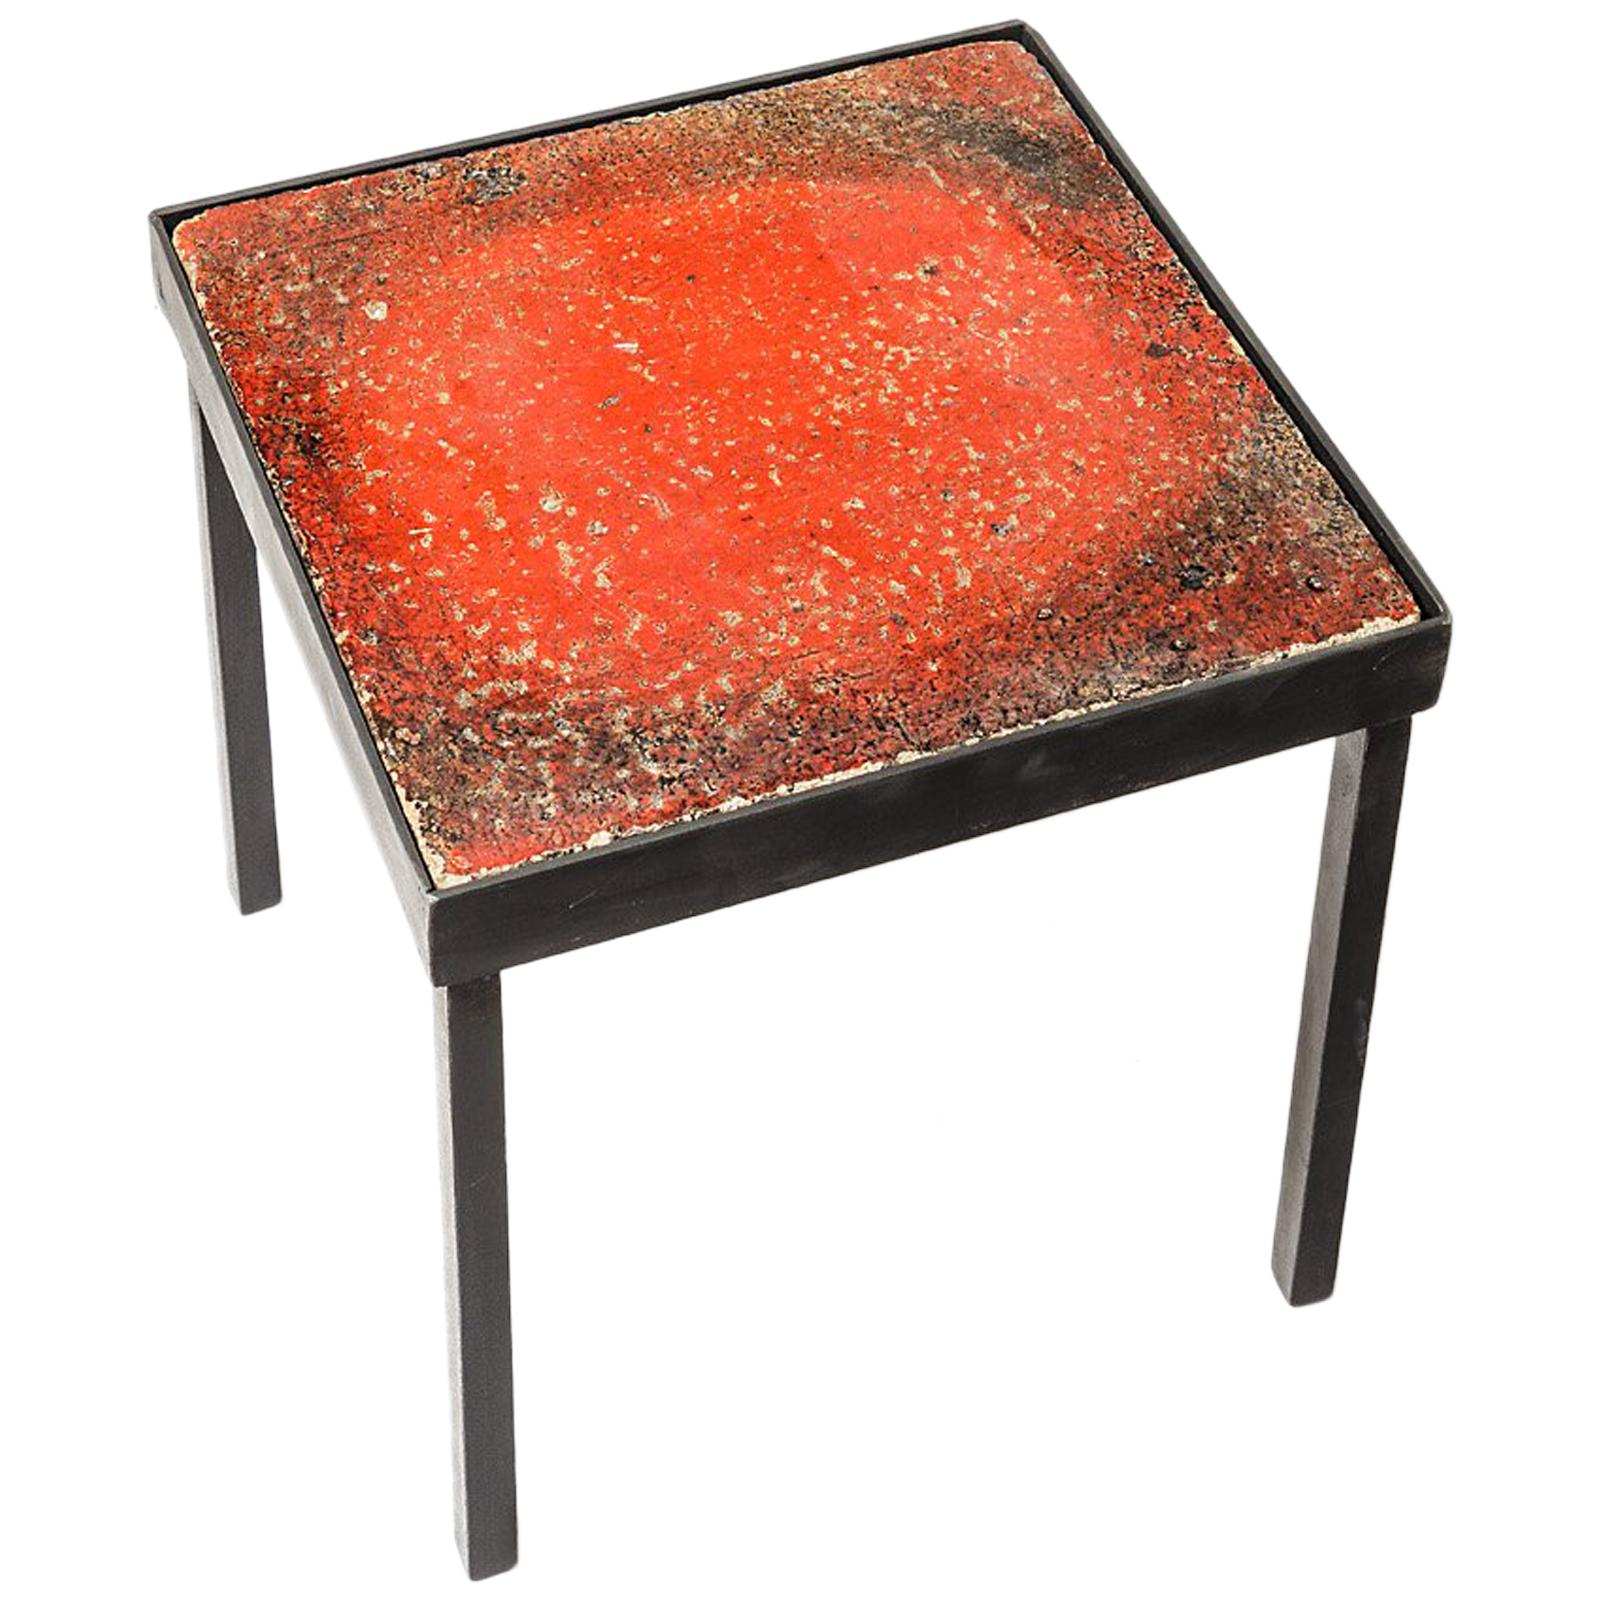 Roter keramischer niedriger Tisch oder Sofatisch um 1950 Französische Produktion